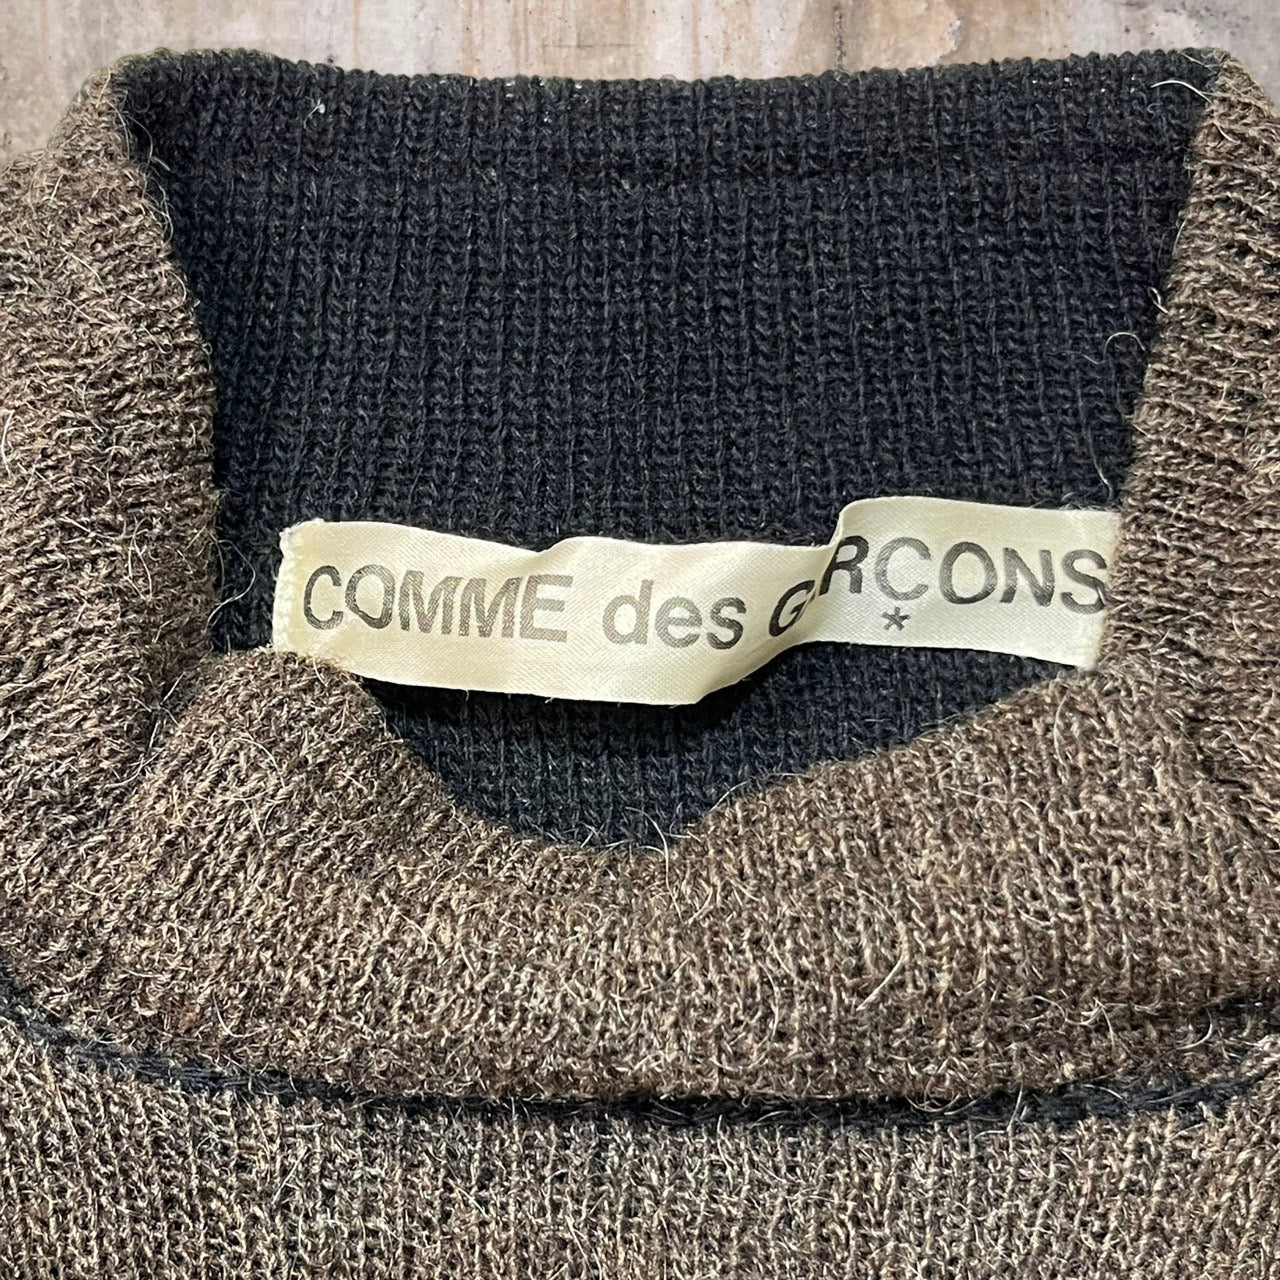 COMME des GARCONS(コムデギャルソン) 98AW wool mohair mock neck knit pullover/ウールモヘヤモックネックニットプルオーバー/90年代/ヴィンテージ GN-040340 SIZE表記なし(FREE) ブラウン×ブラック×ベージュ AD1998